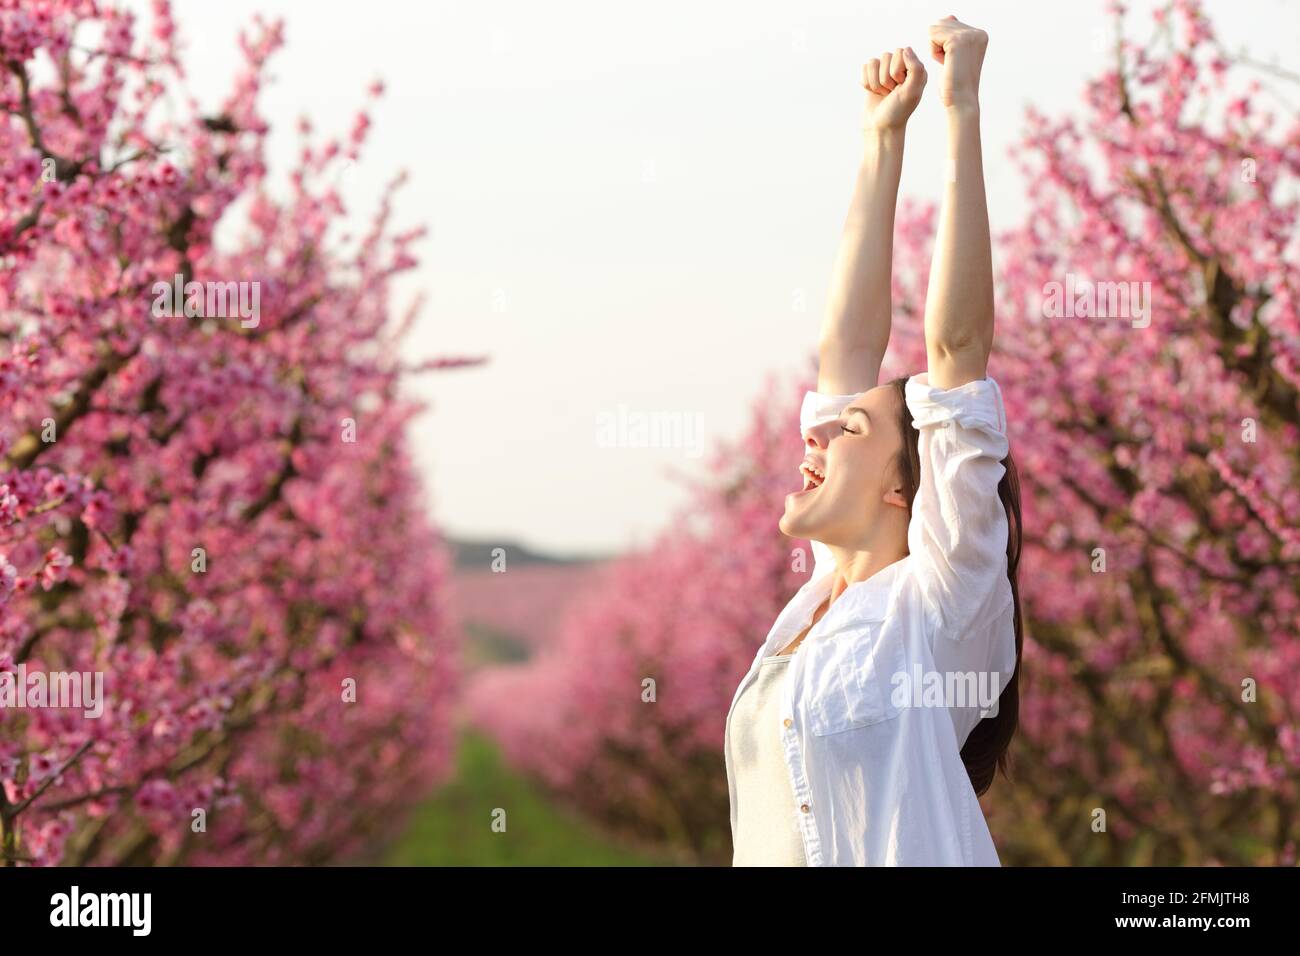 Aufgeregte Frau, die die Arme hebt und den Frühling in einem rosa Blütenpracht feiert Angezeigt Stockfoto